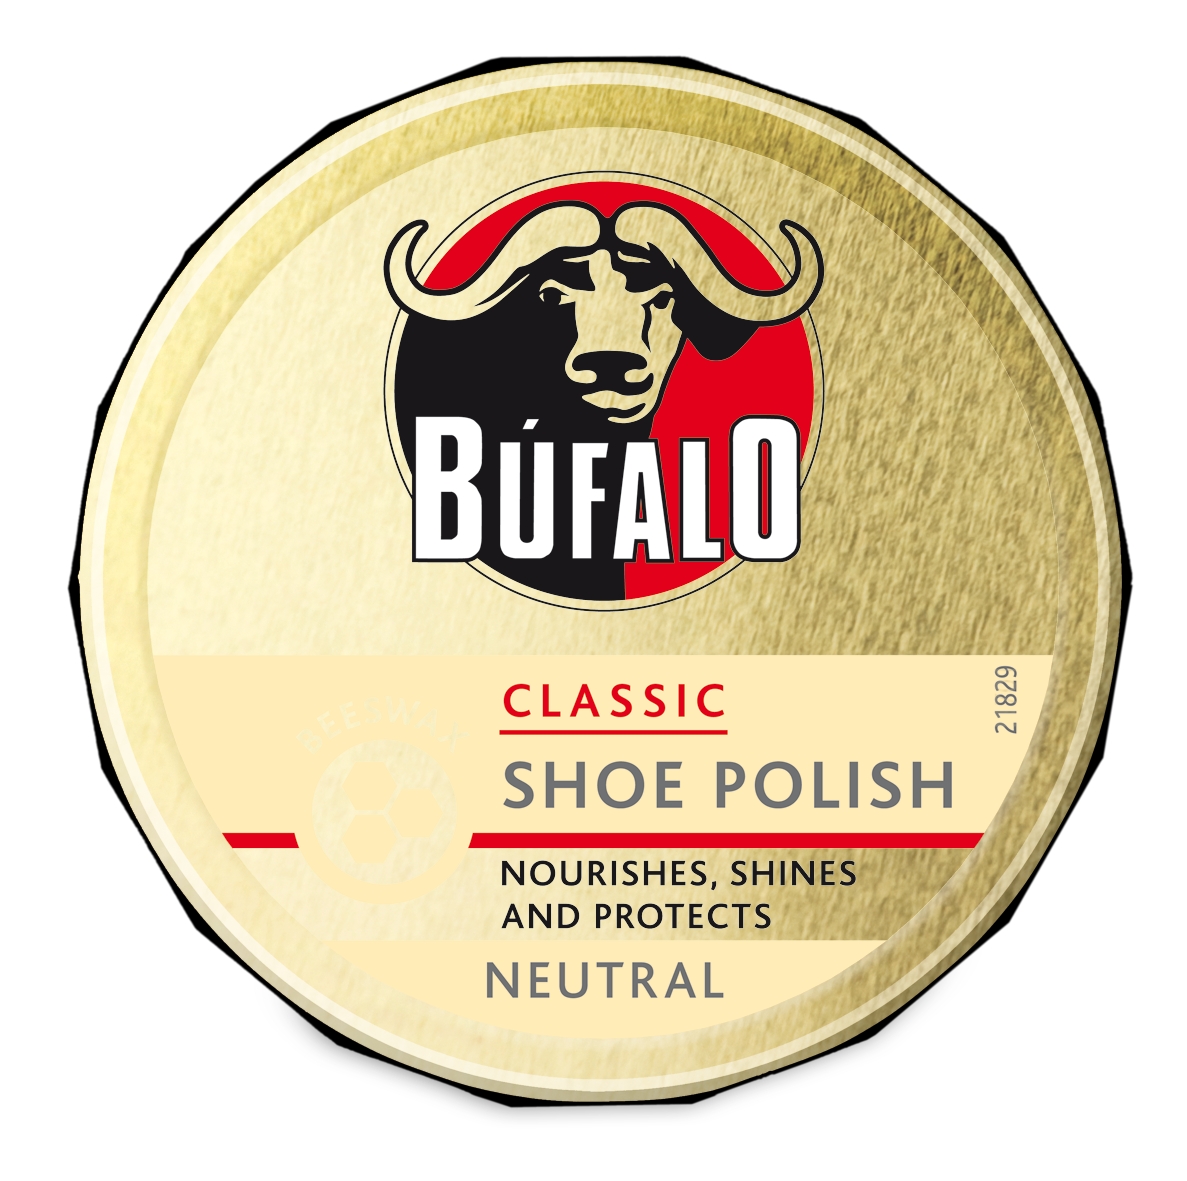 Bufalo Shoe Polish